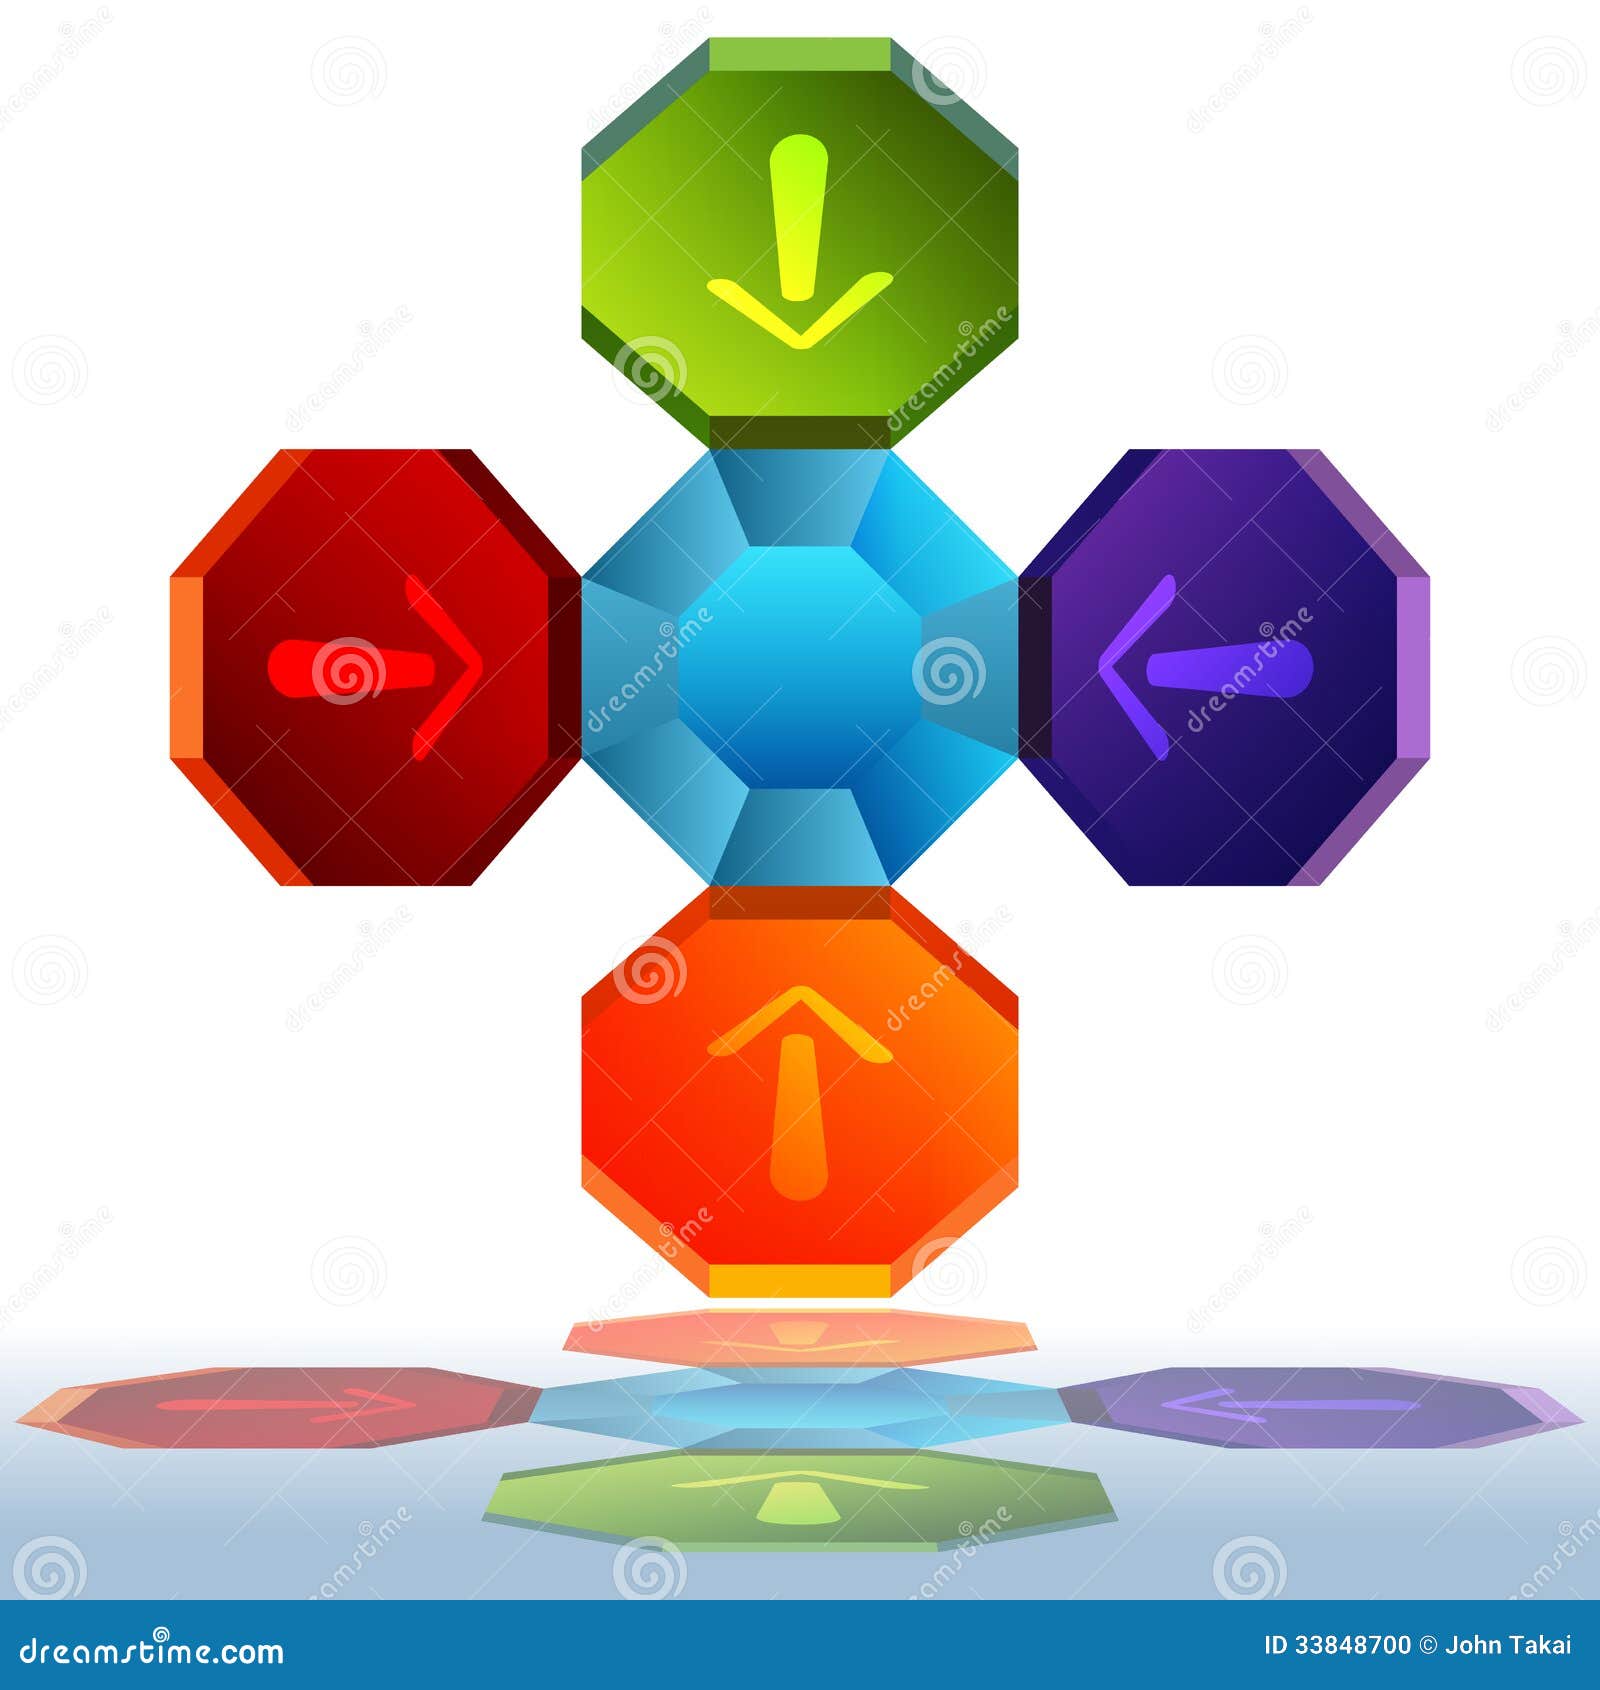 3d octagon chart